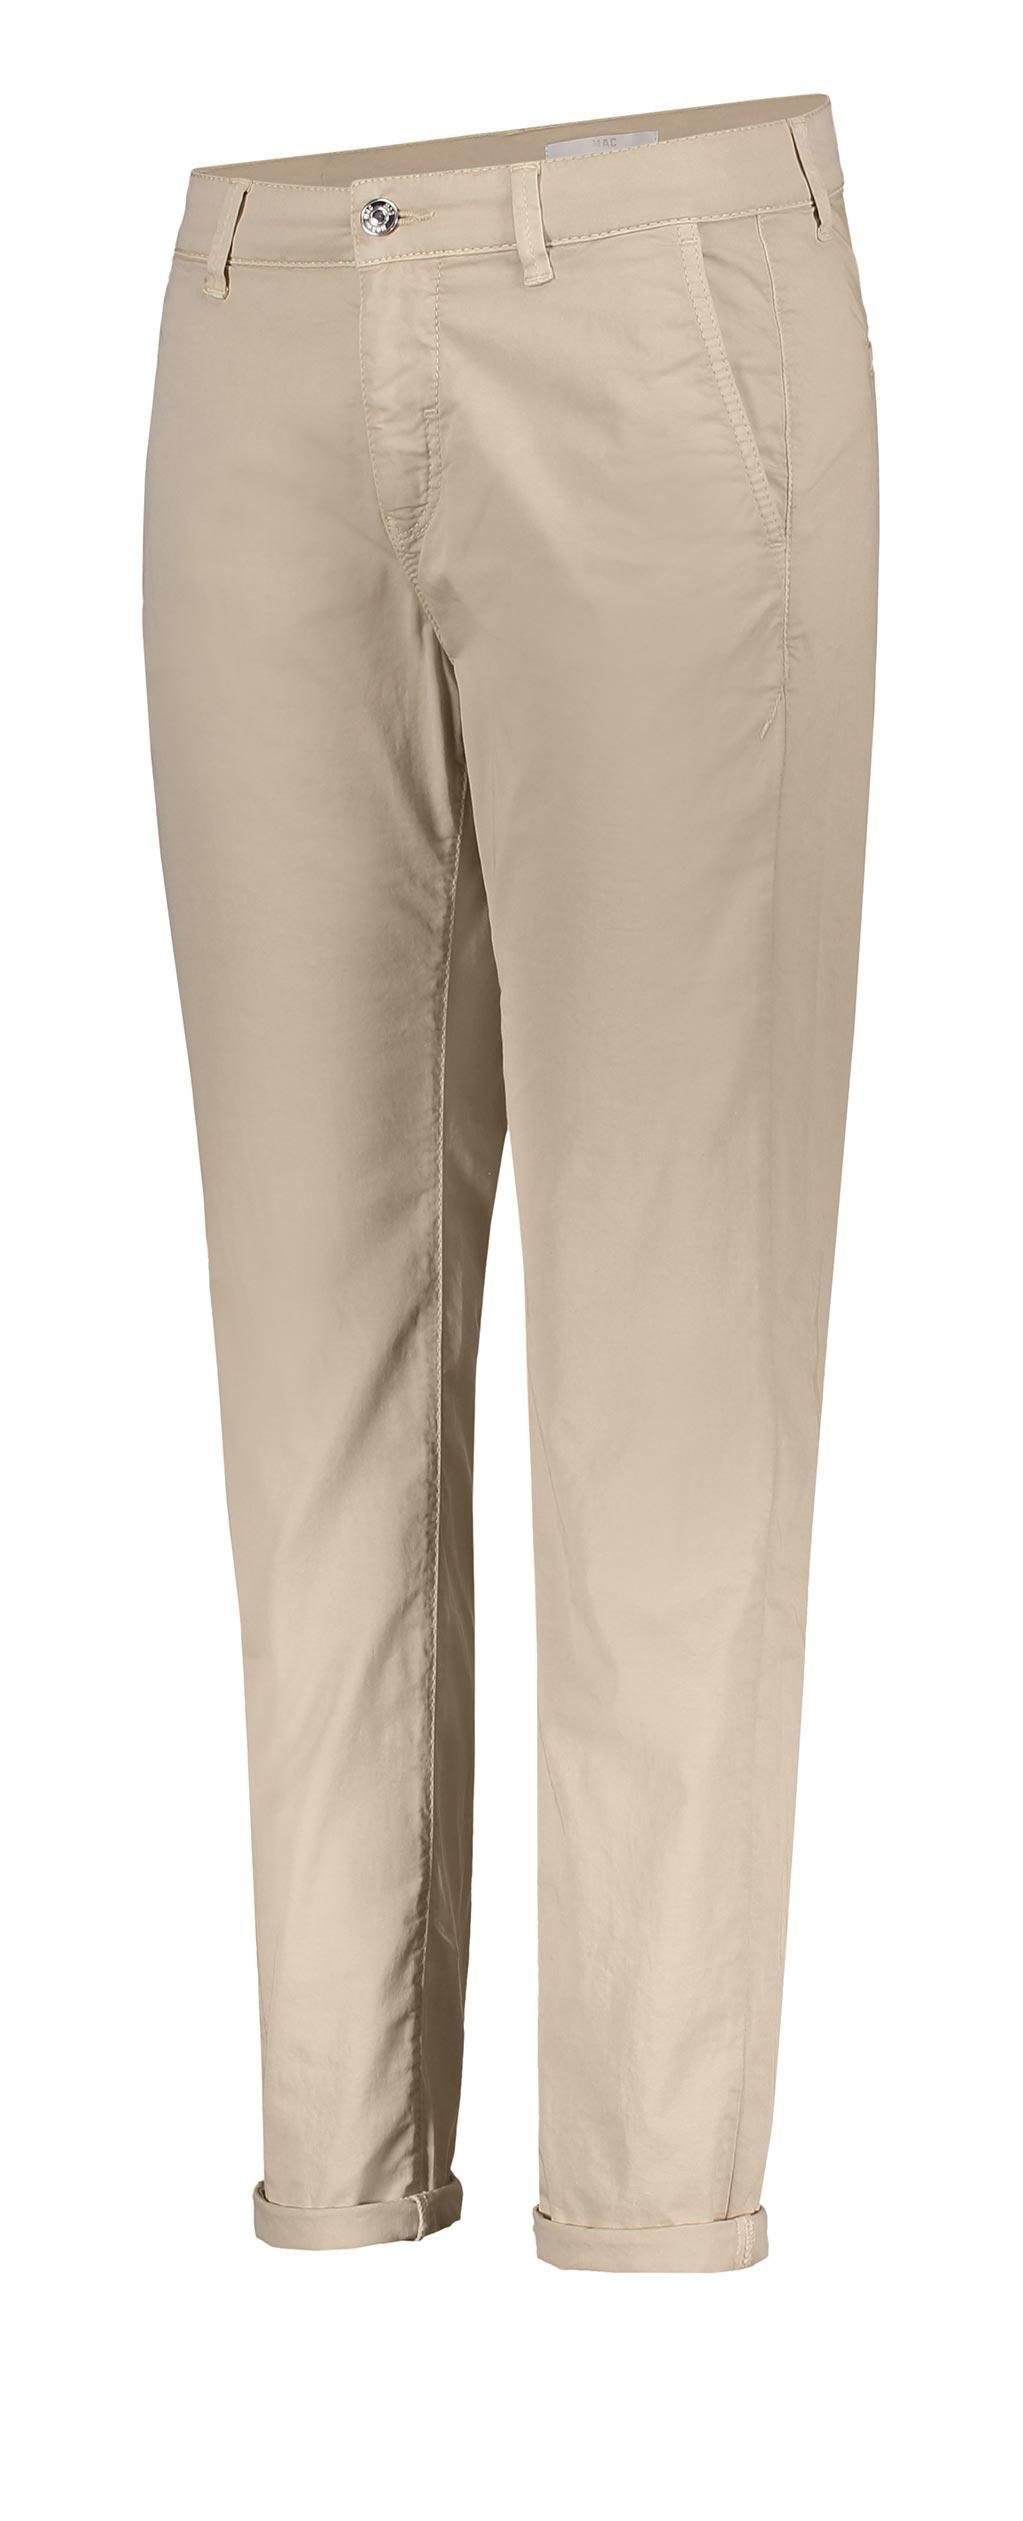 MAC Stretch-Jeans MAC CHINO wheat beige PPT 3070-00-0408L 205R